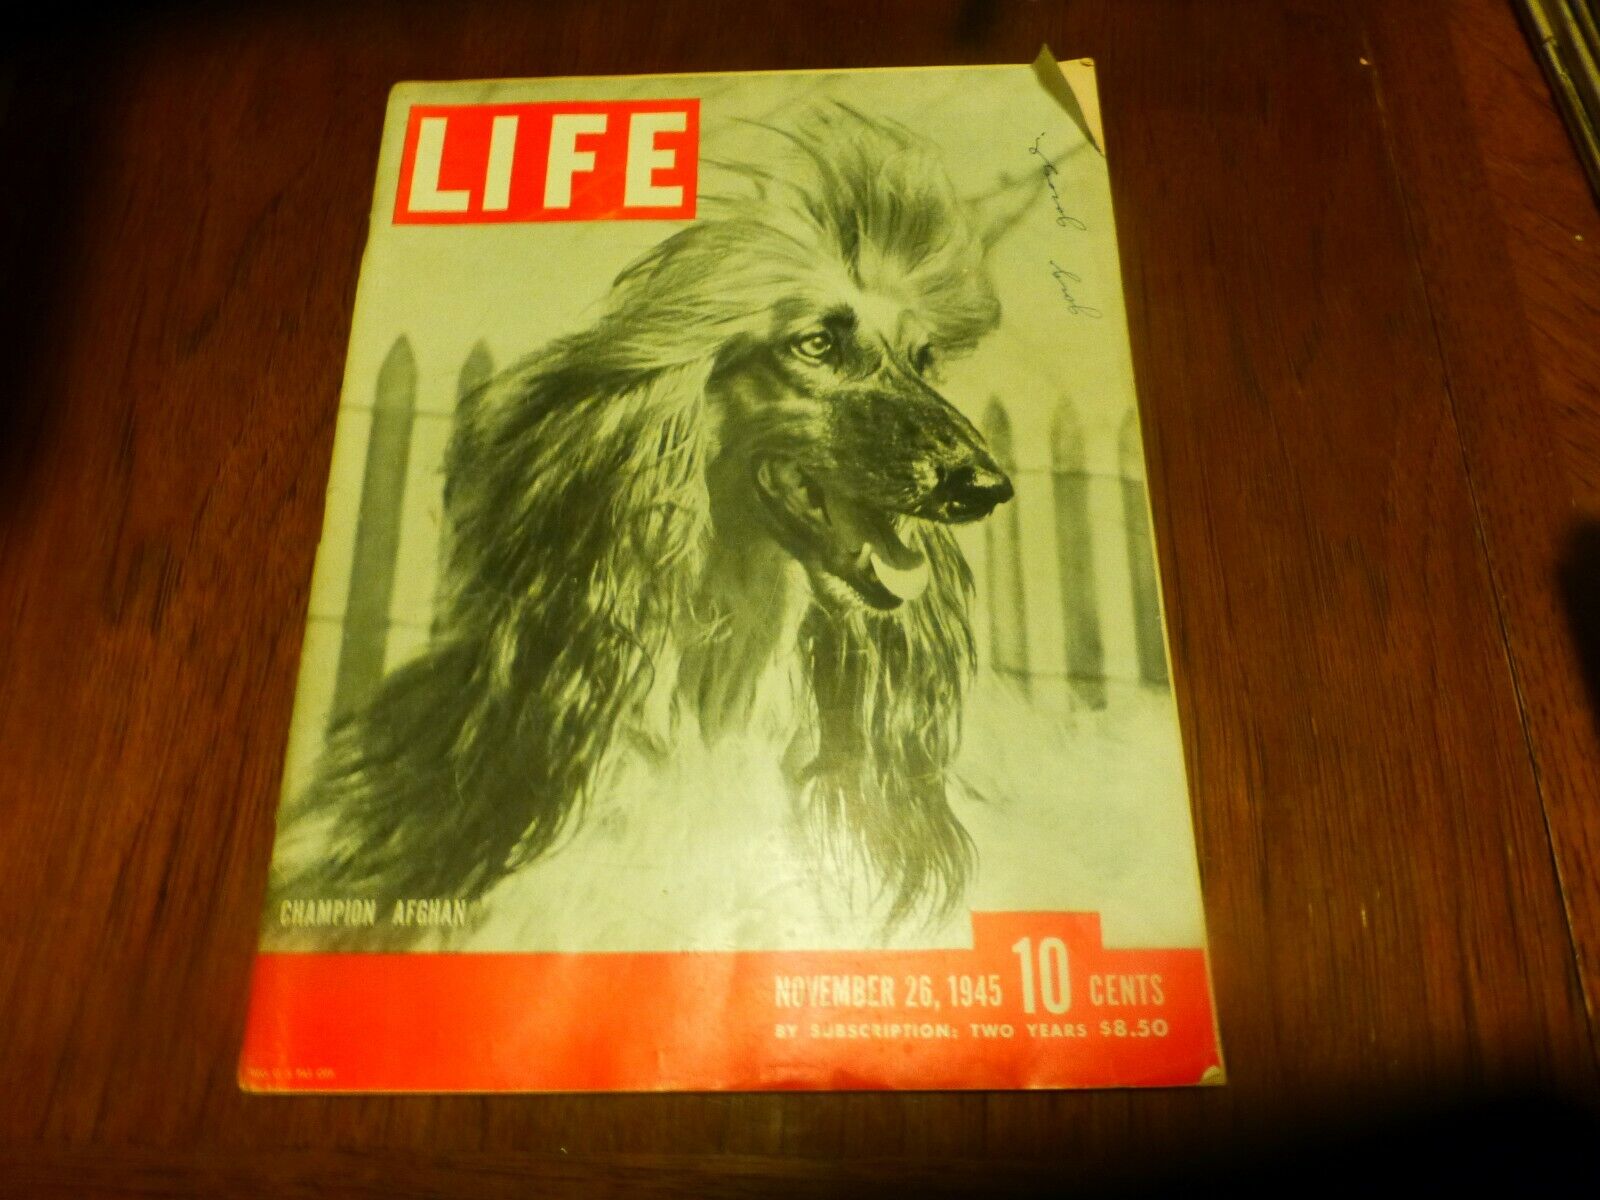 Vintage LIFE Magazine Nov 26, 1945 Champion Afghan Dog fence in background